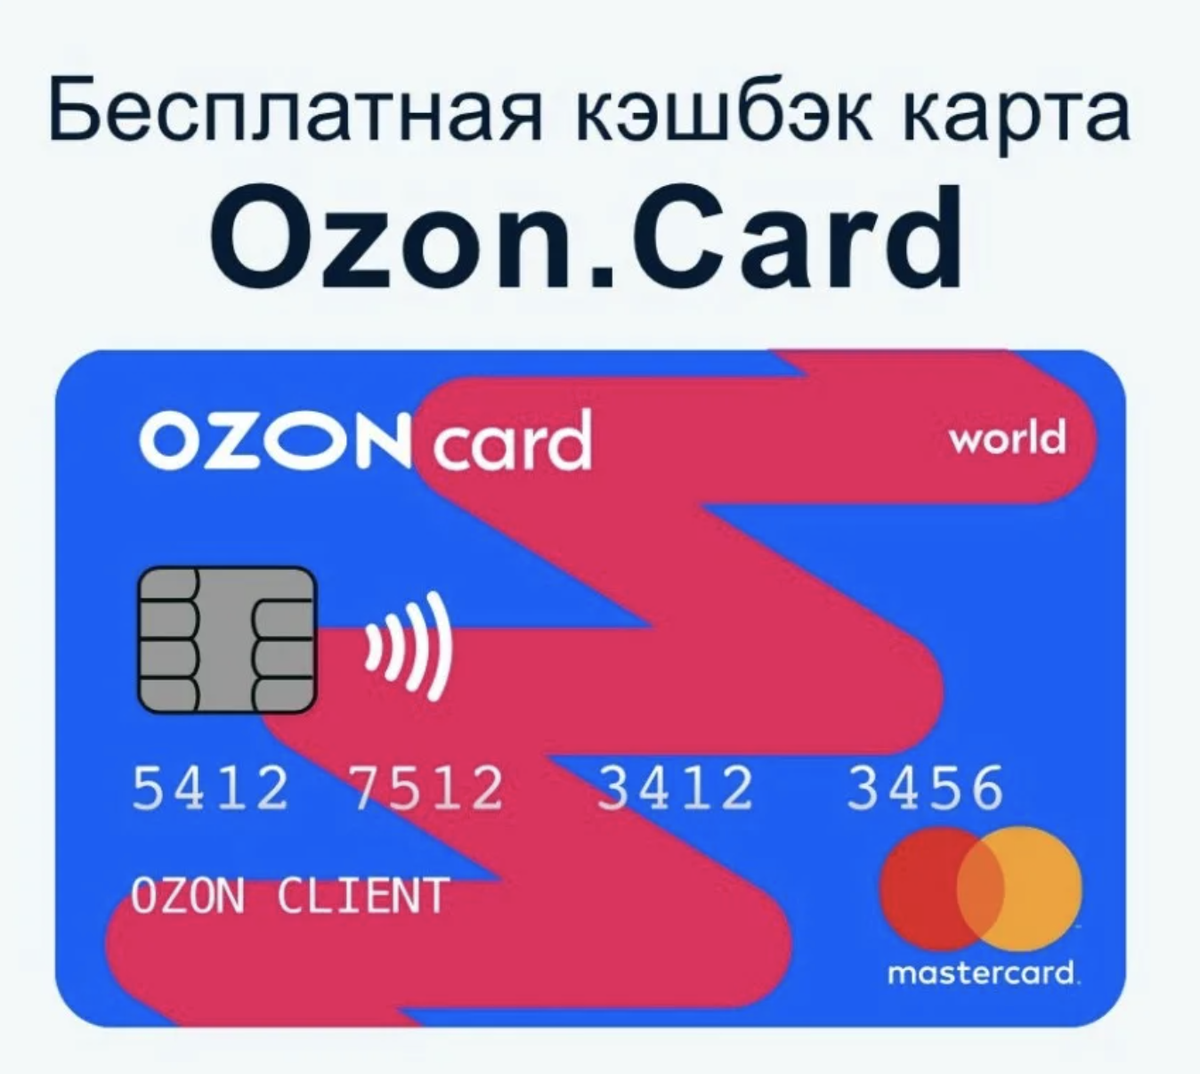 Карта озон банка оформить заявку. OZON карта. Карта OZON Card. Банковская карта Озон. Карта кэшбэк.